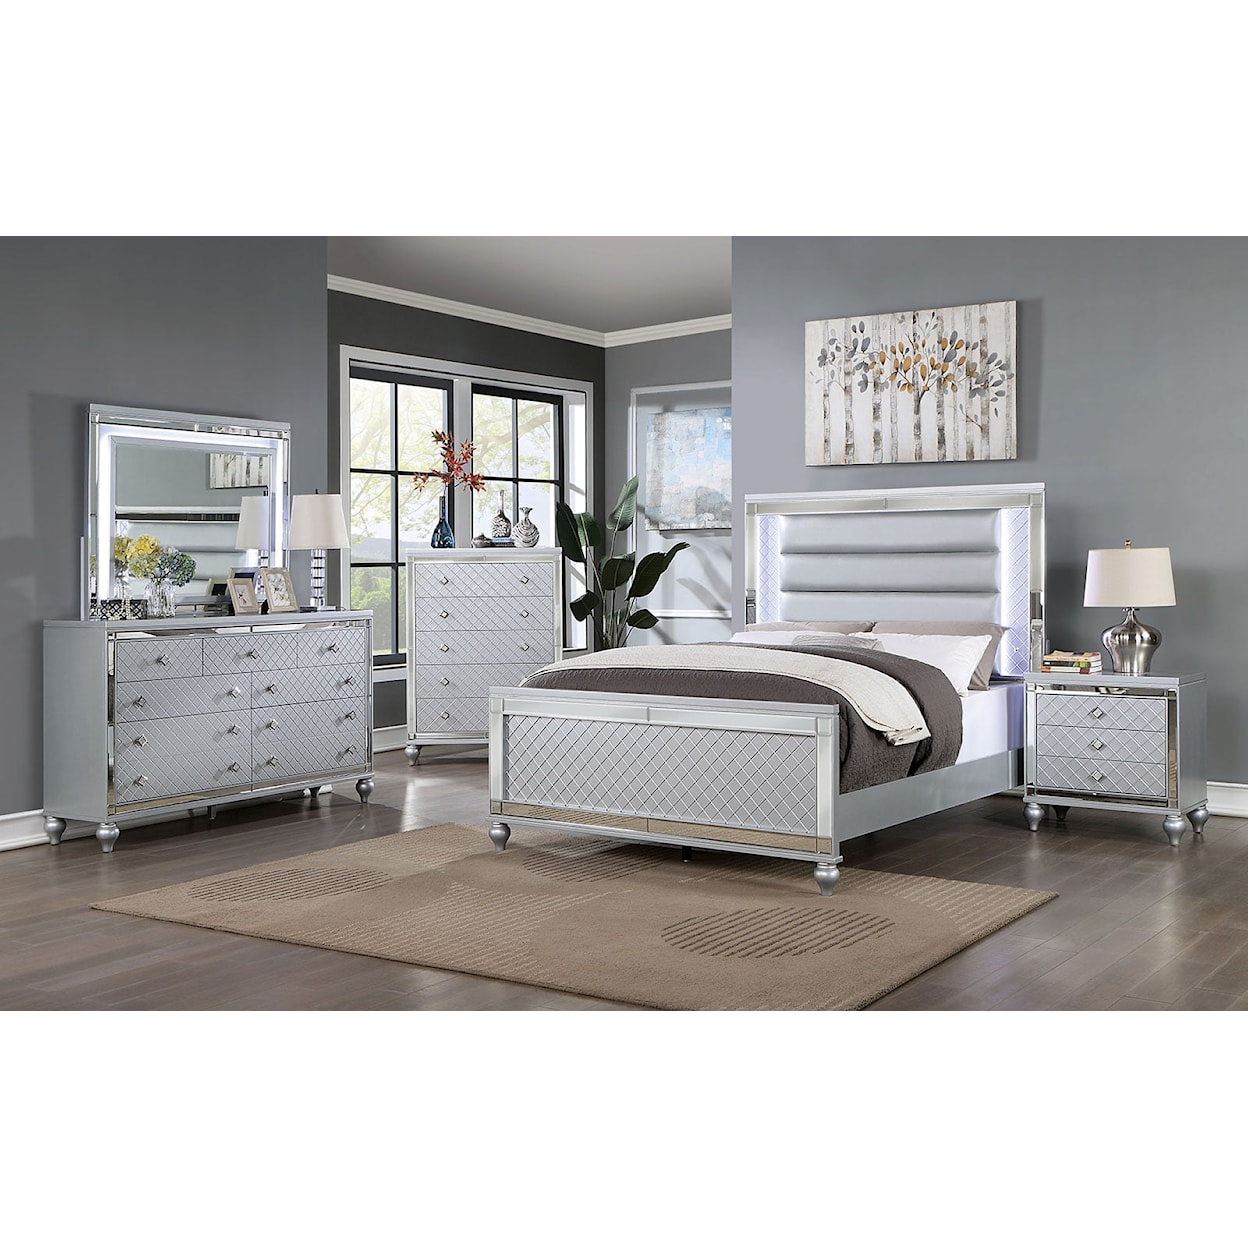 Furniture of America CALANDRIA 5-Piece Queen Bedroom Set with 2 Nightstands